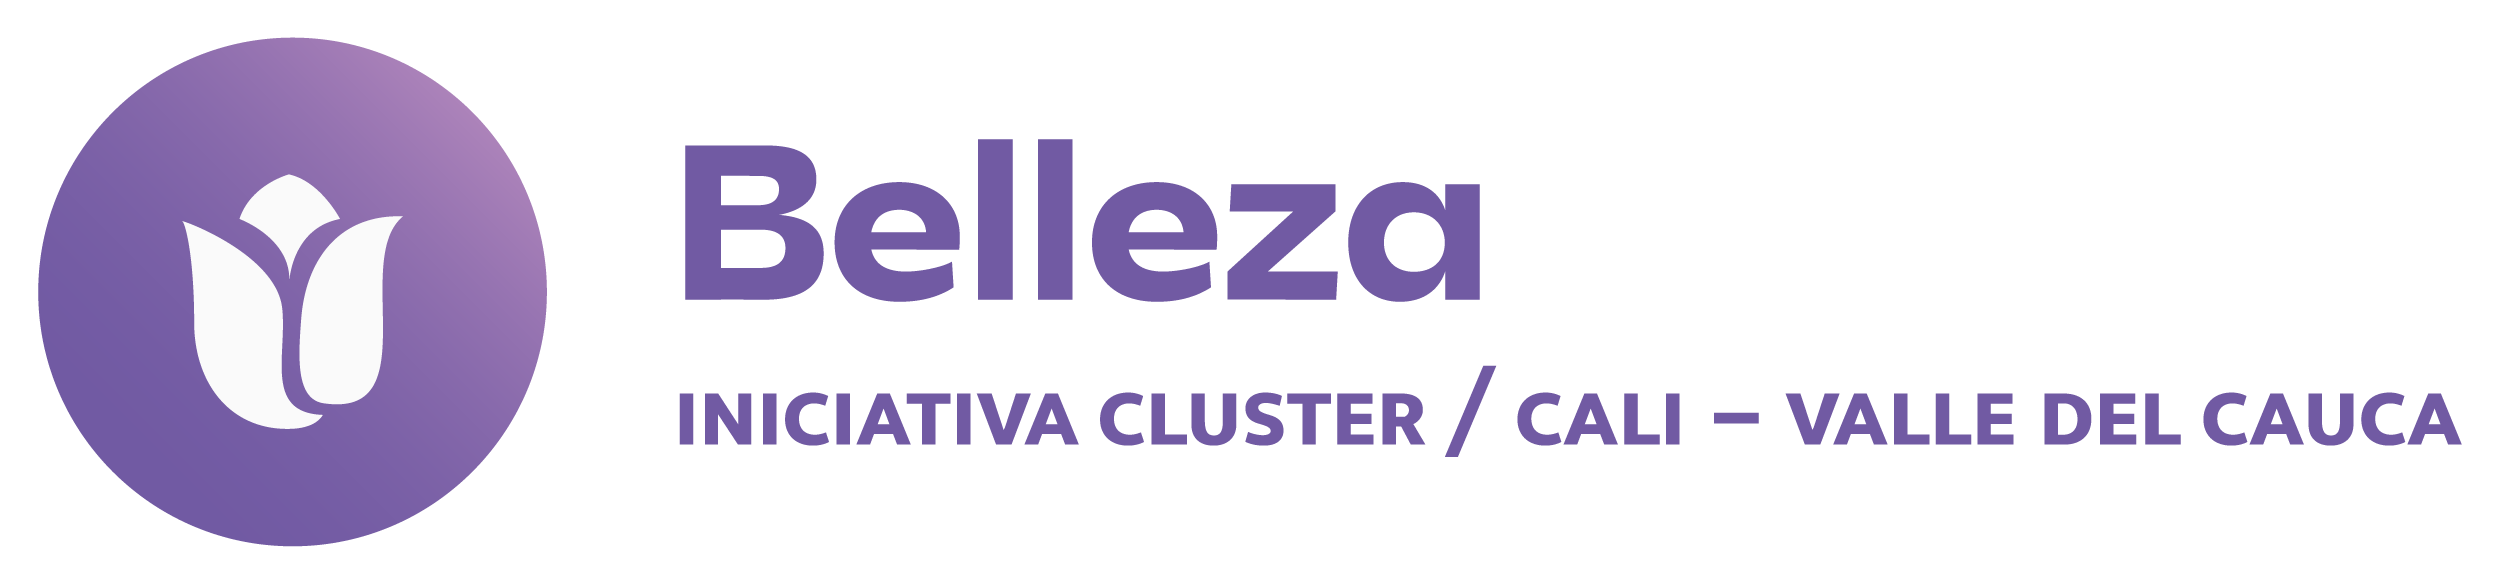 Cluster Belleza